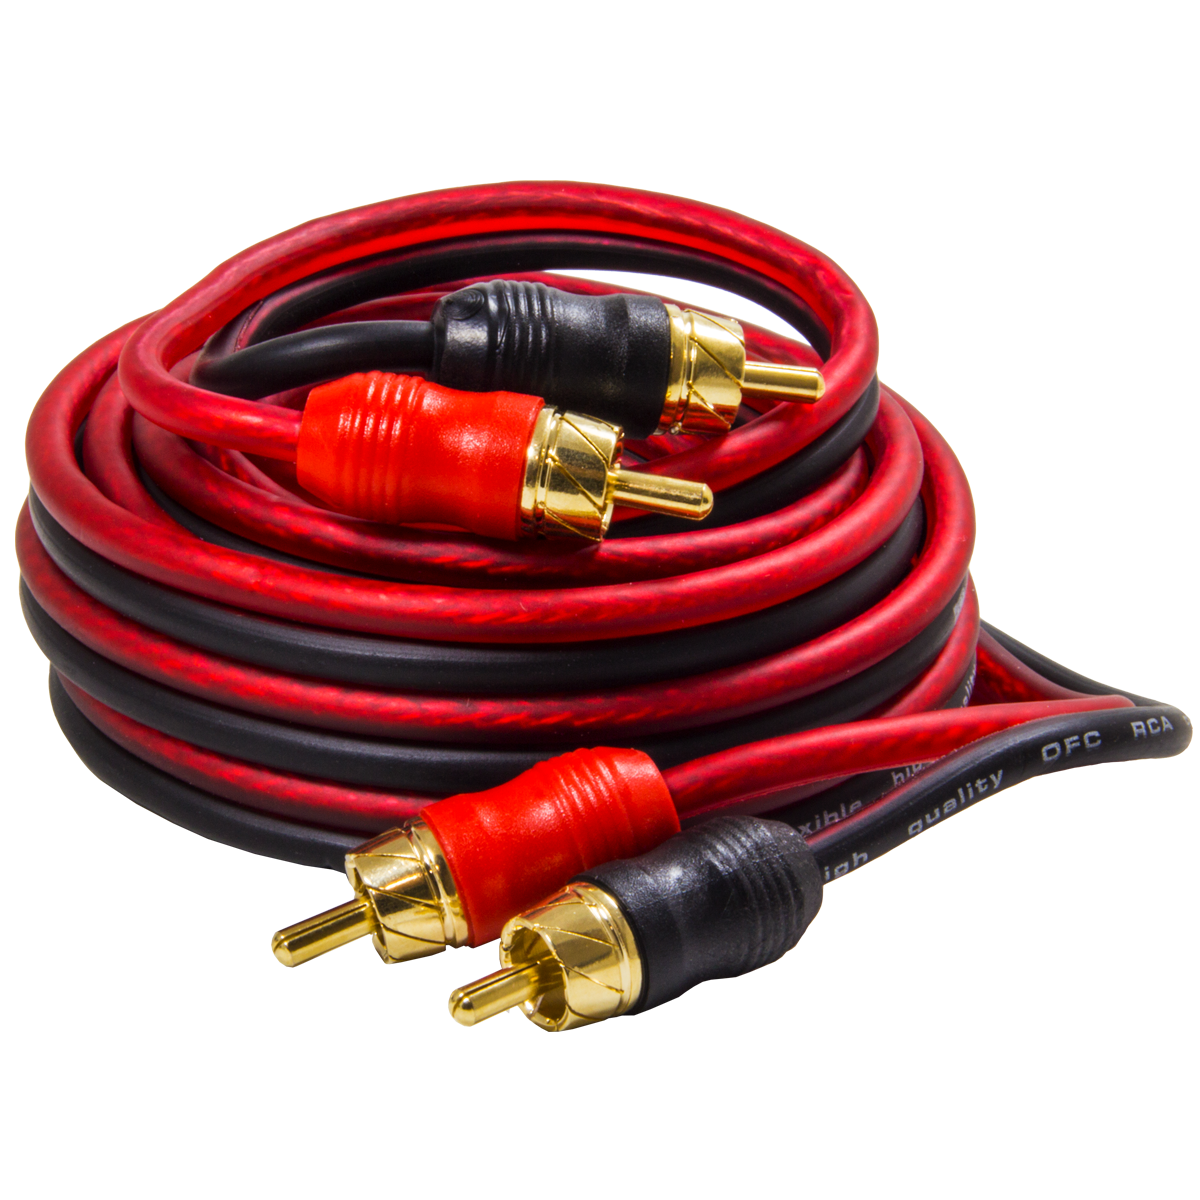 Провод соединительный AMP SRCA-3 Межблочный кабель-медь (3м) купить в интернет магазине AMPGROUP.  Провод соединительный AMP SRCA-3 Межблочный кабель-медь (3м)   цены, большой каталог, новинки.
